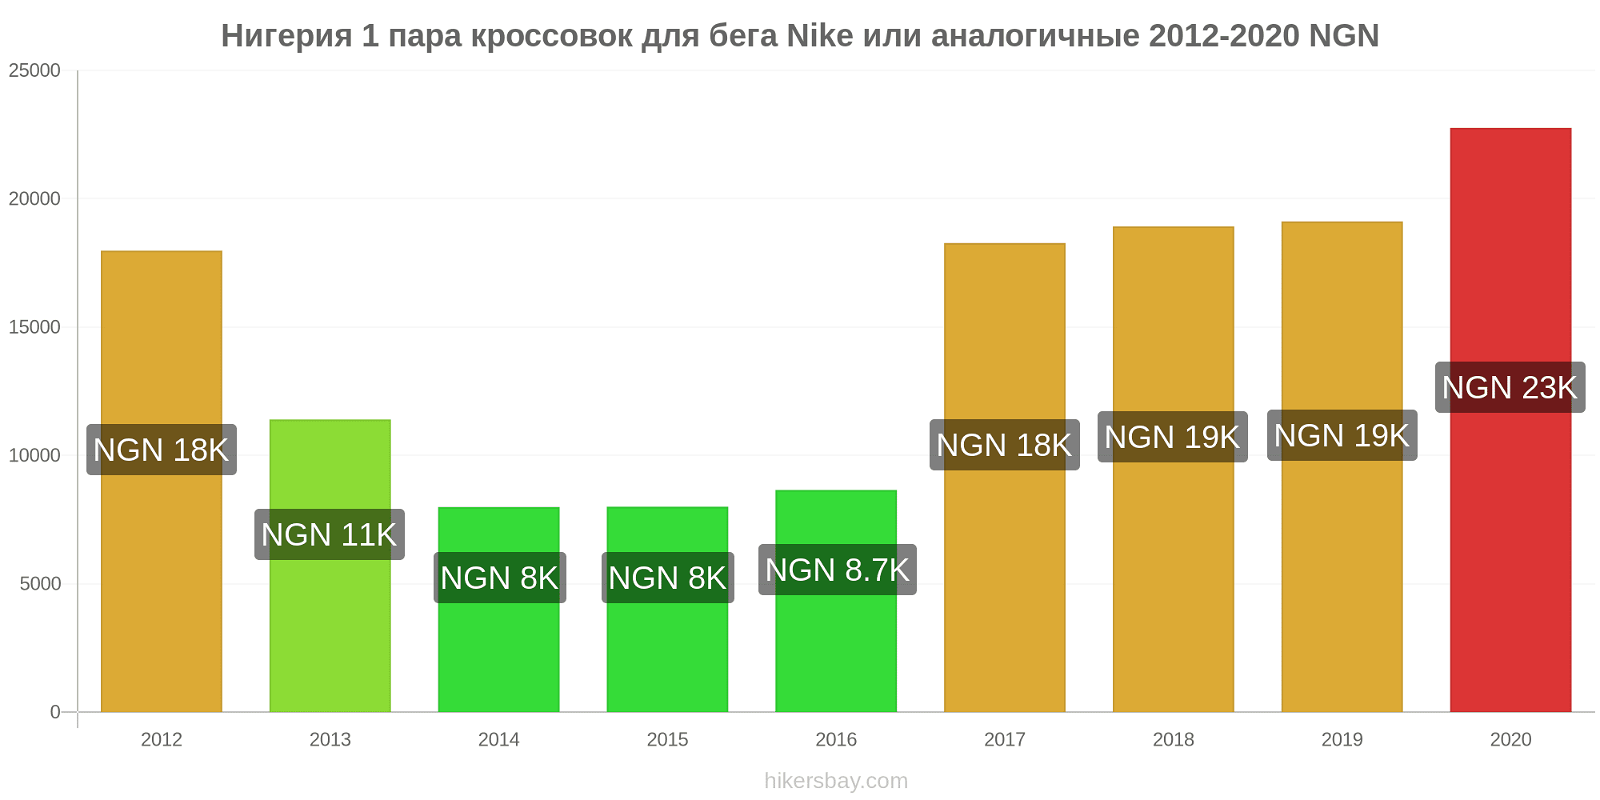 Нигерия изменения цен 1 пара кроссовок для бега Nike или аналогичные hikersbay.com